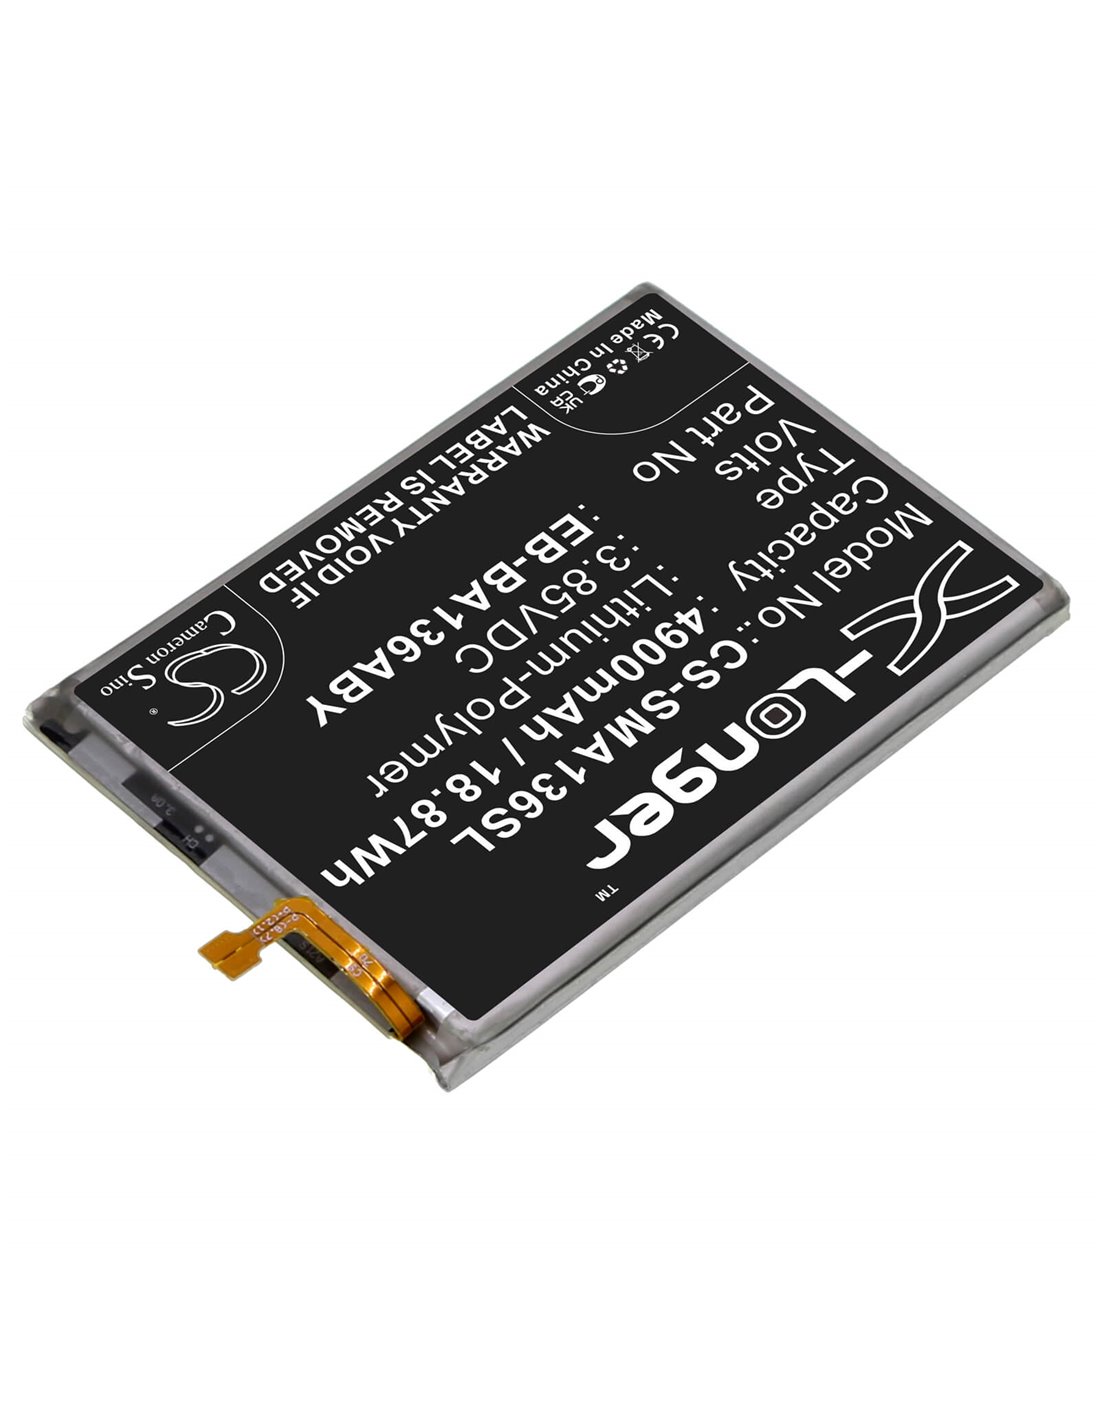 3.85V, Li-Polymer, 4900mAh, Battery fits Samsung Galaxy A13 5g, Sm-a136a, 18.87Wh